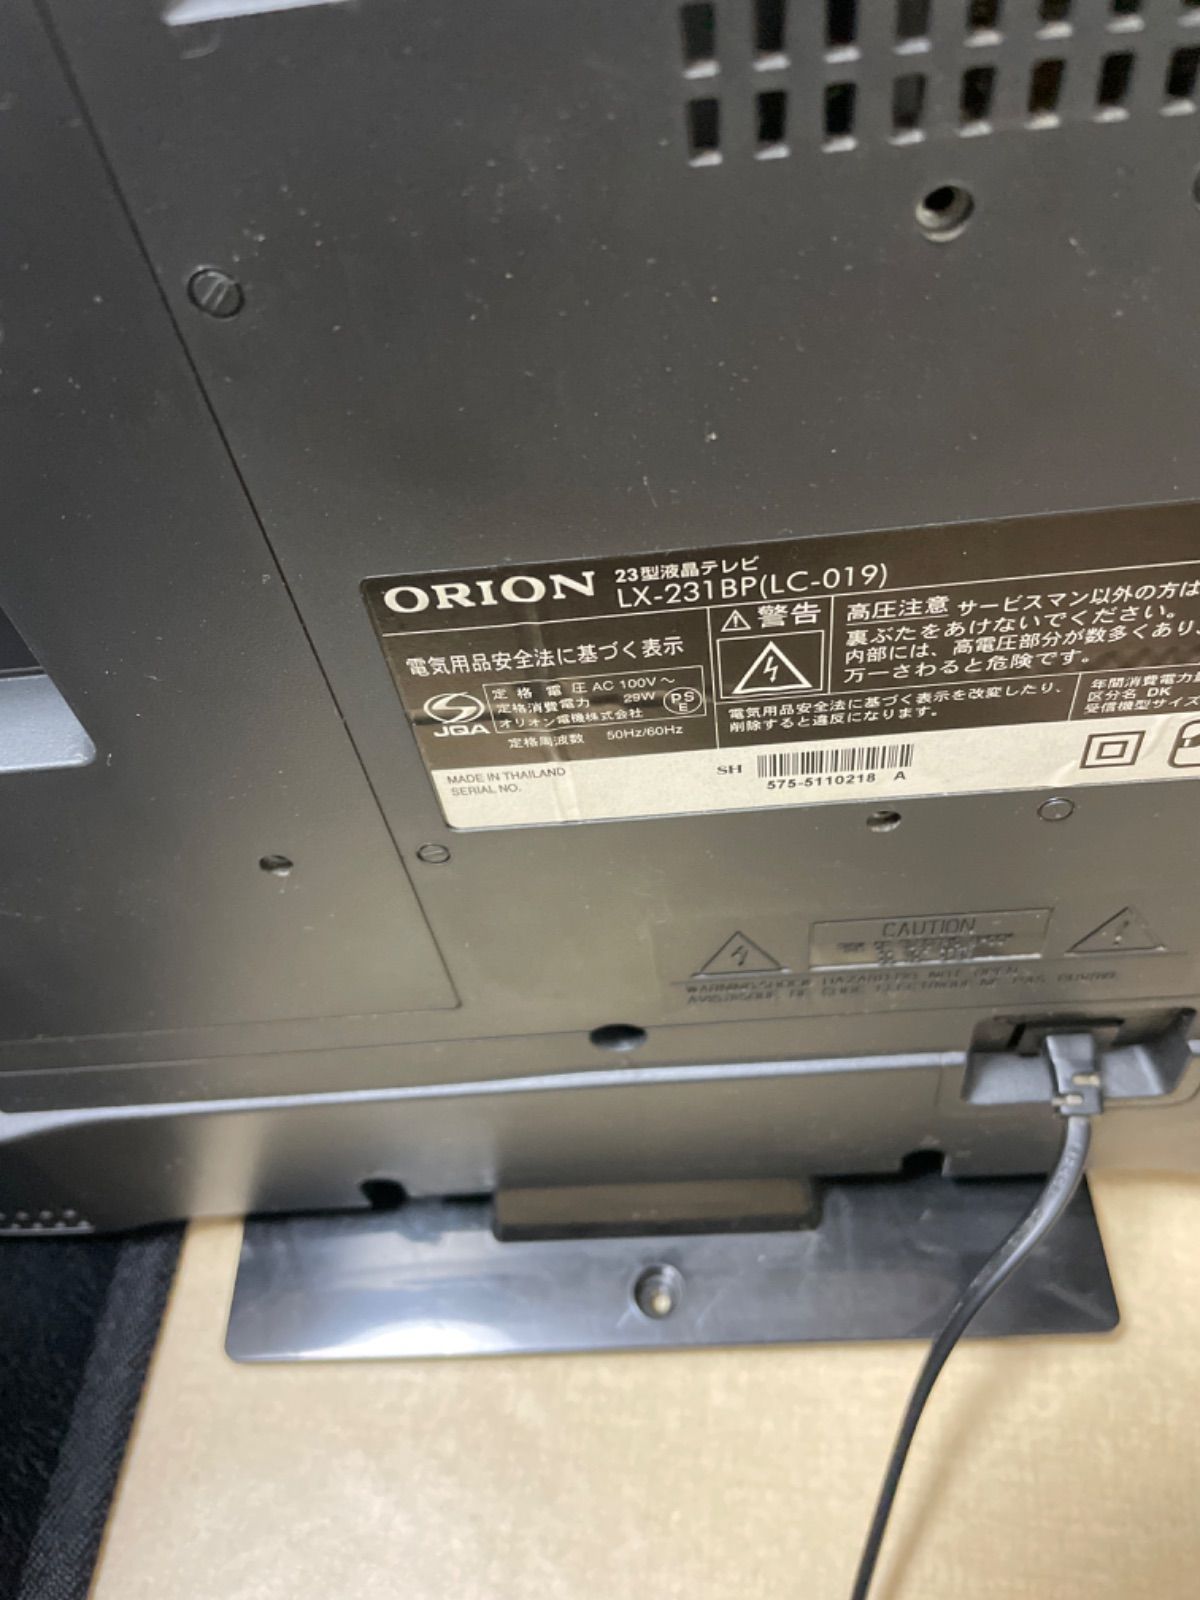 【23型テレビ】ORION LX-231BP